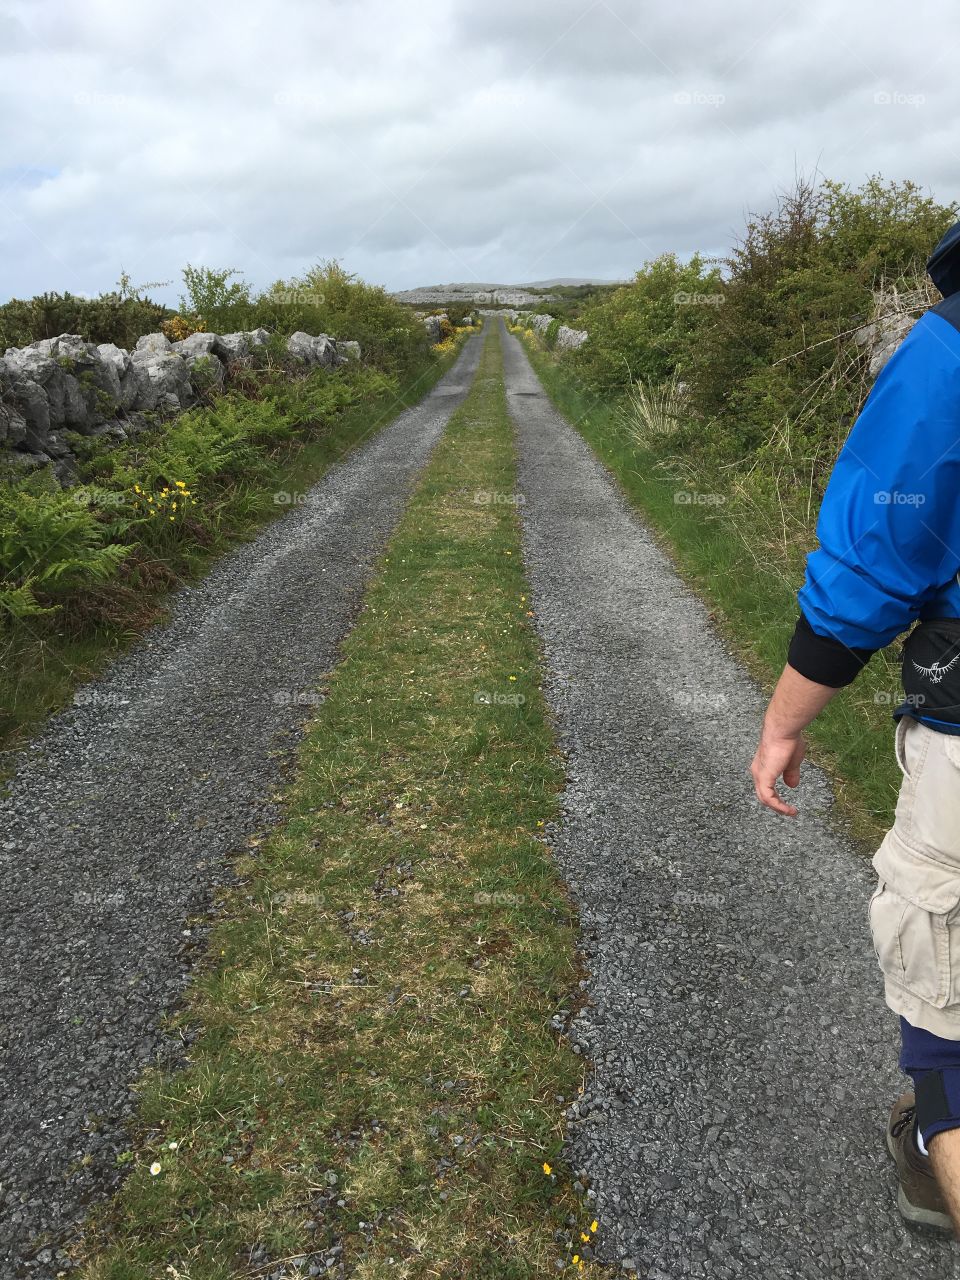 The Burren Way in Ireland